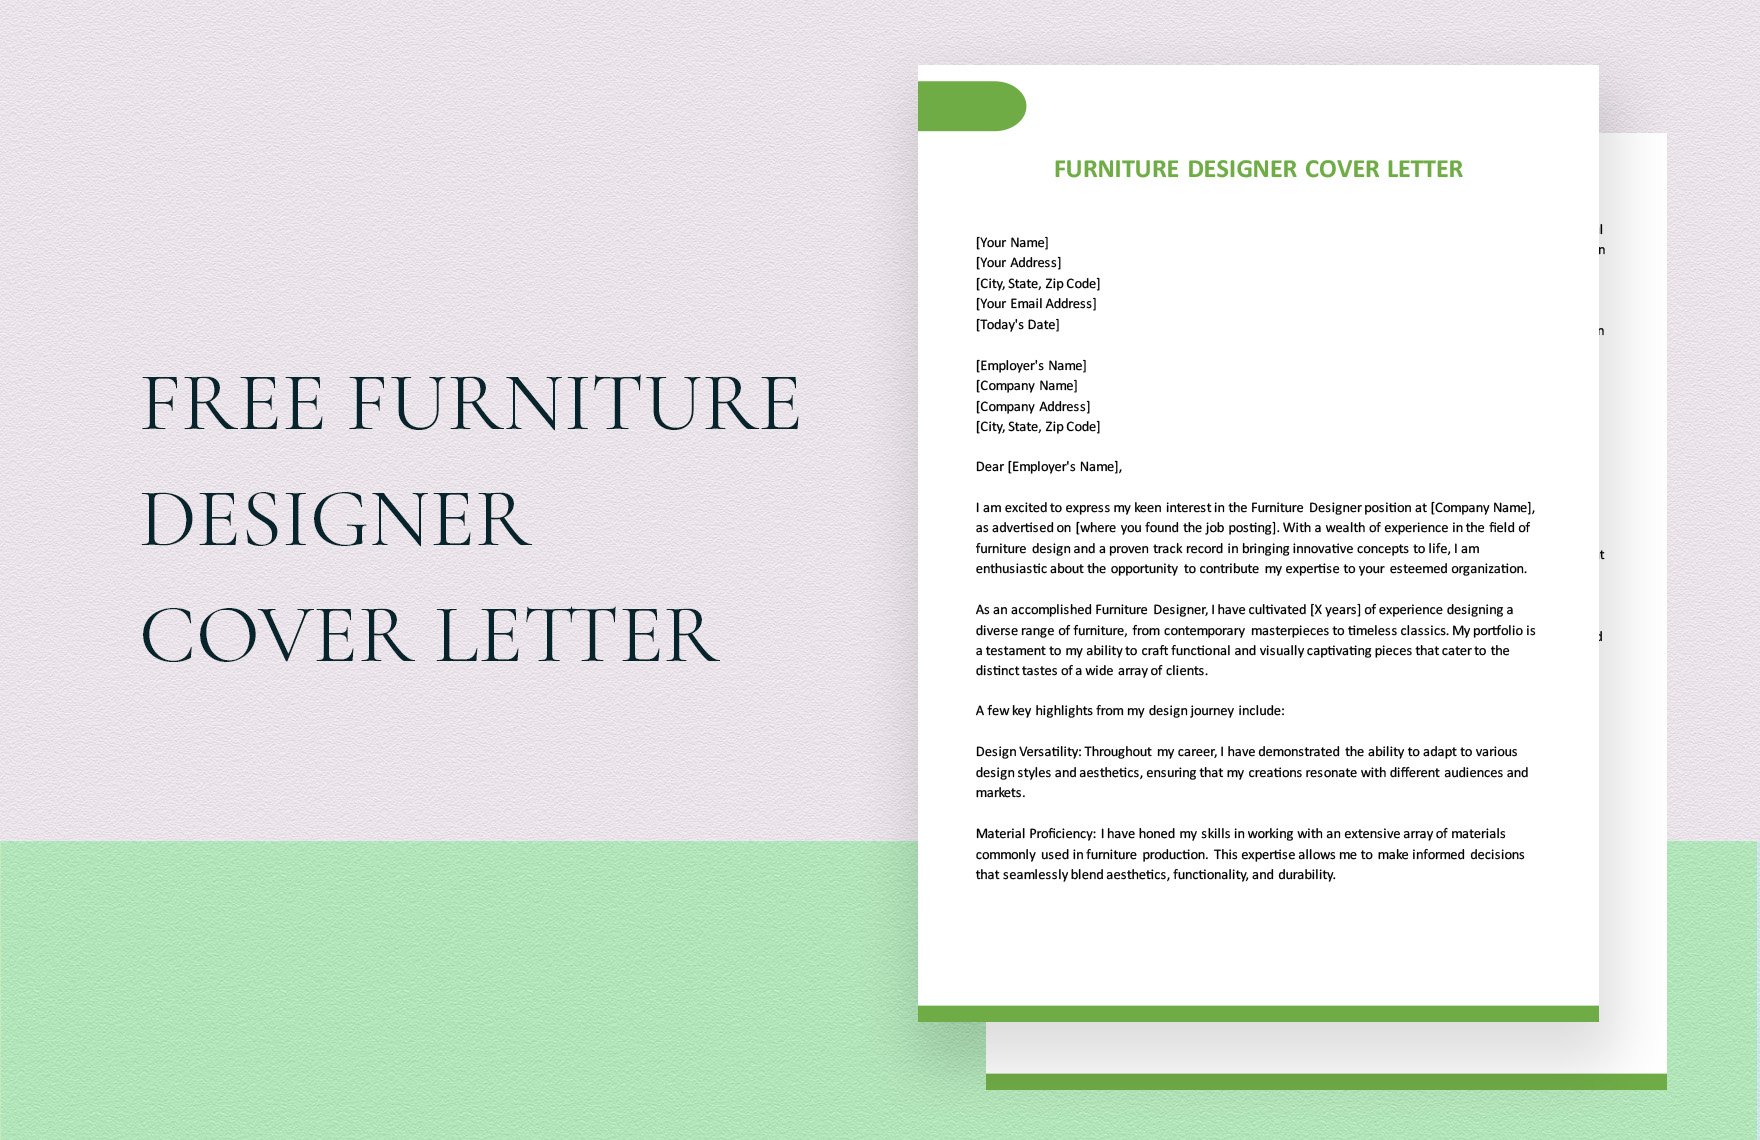 Furniture Designer Cover Letter